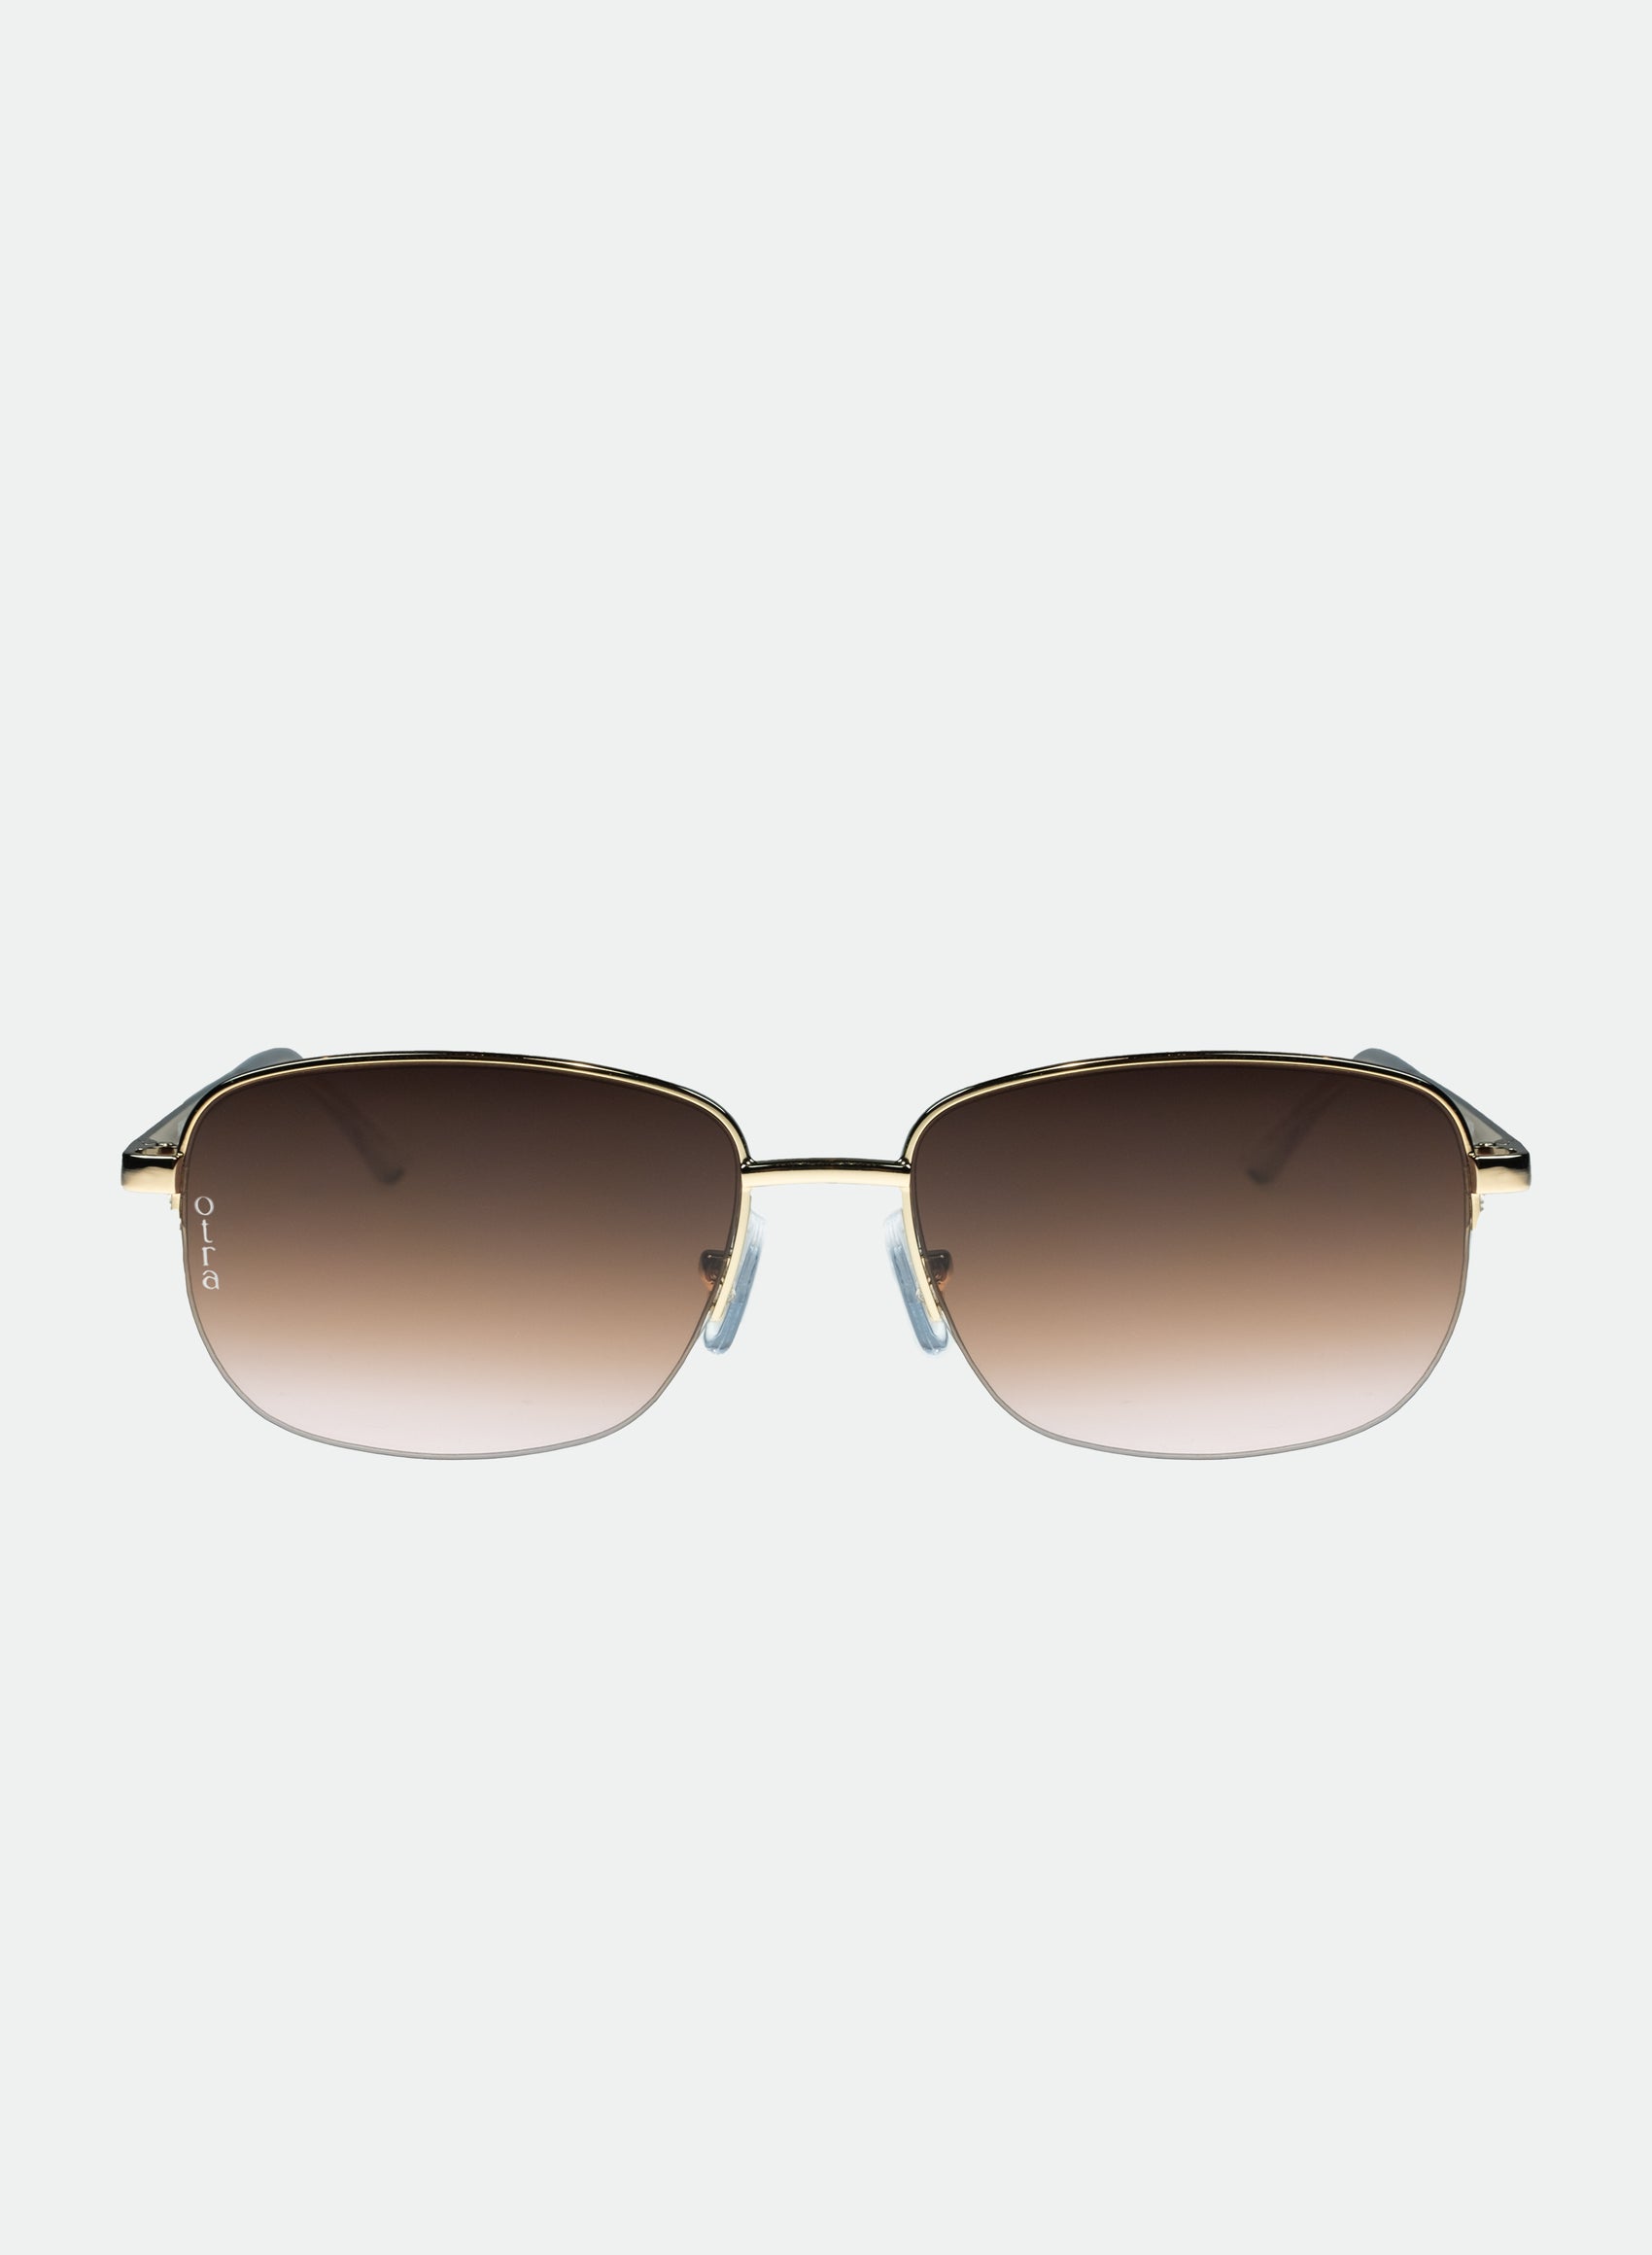 Junior small metal sunglasses in brown